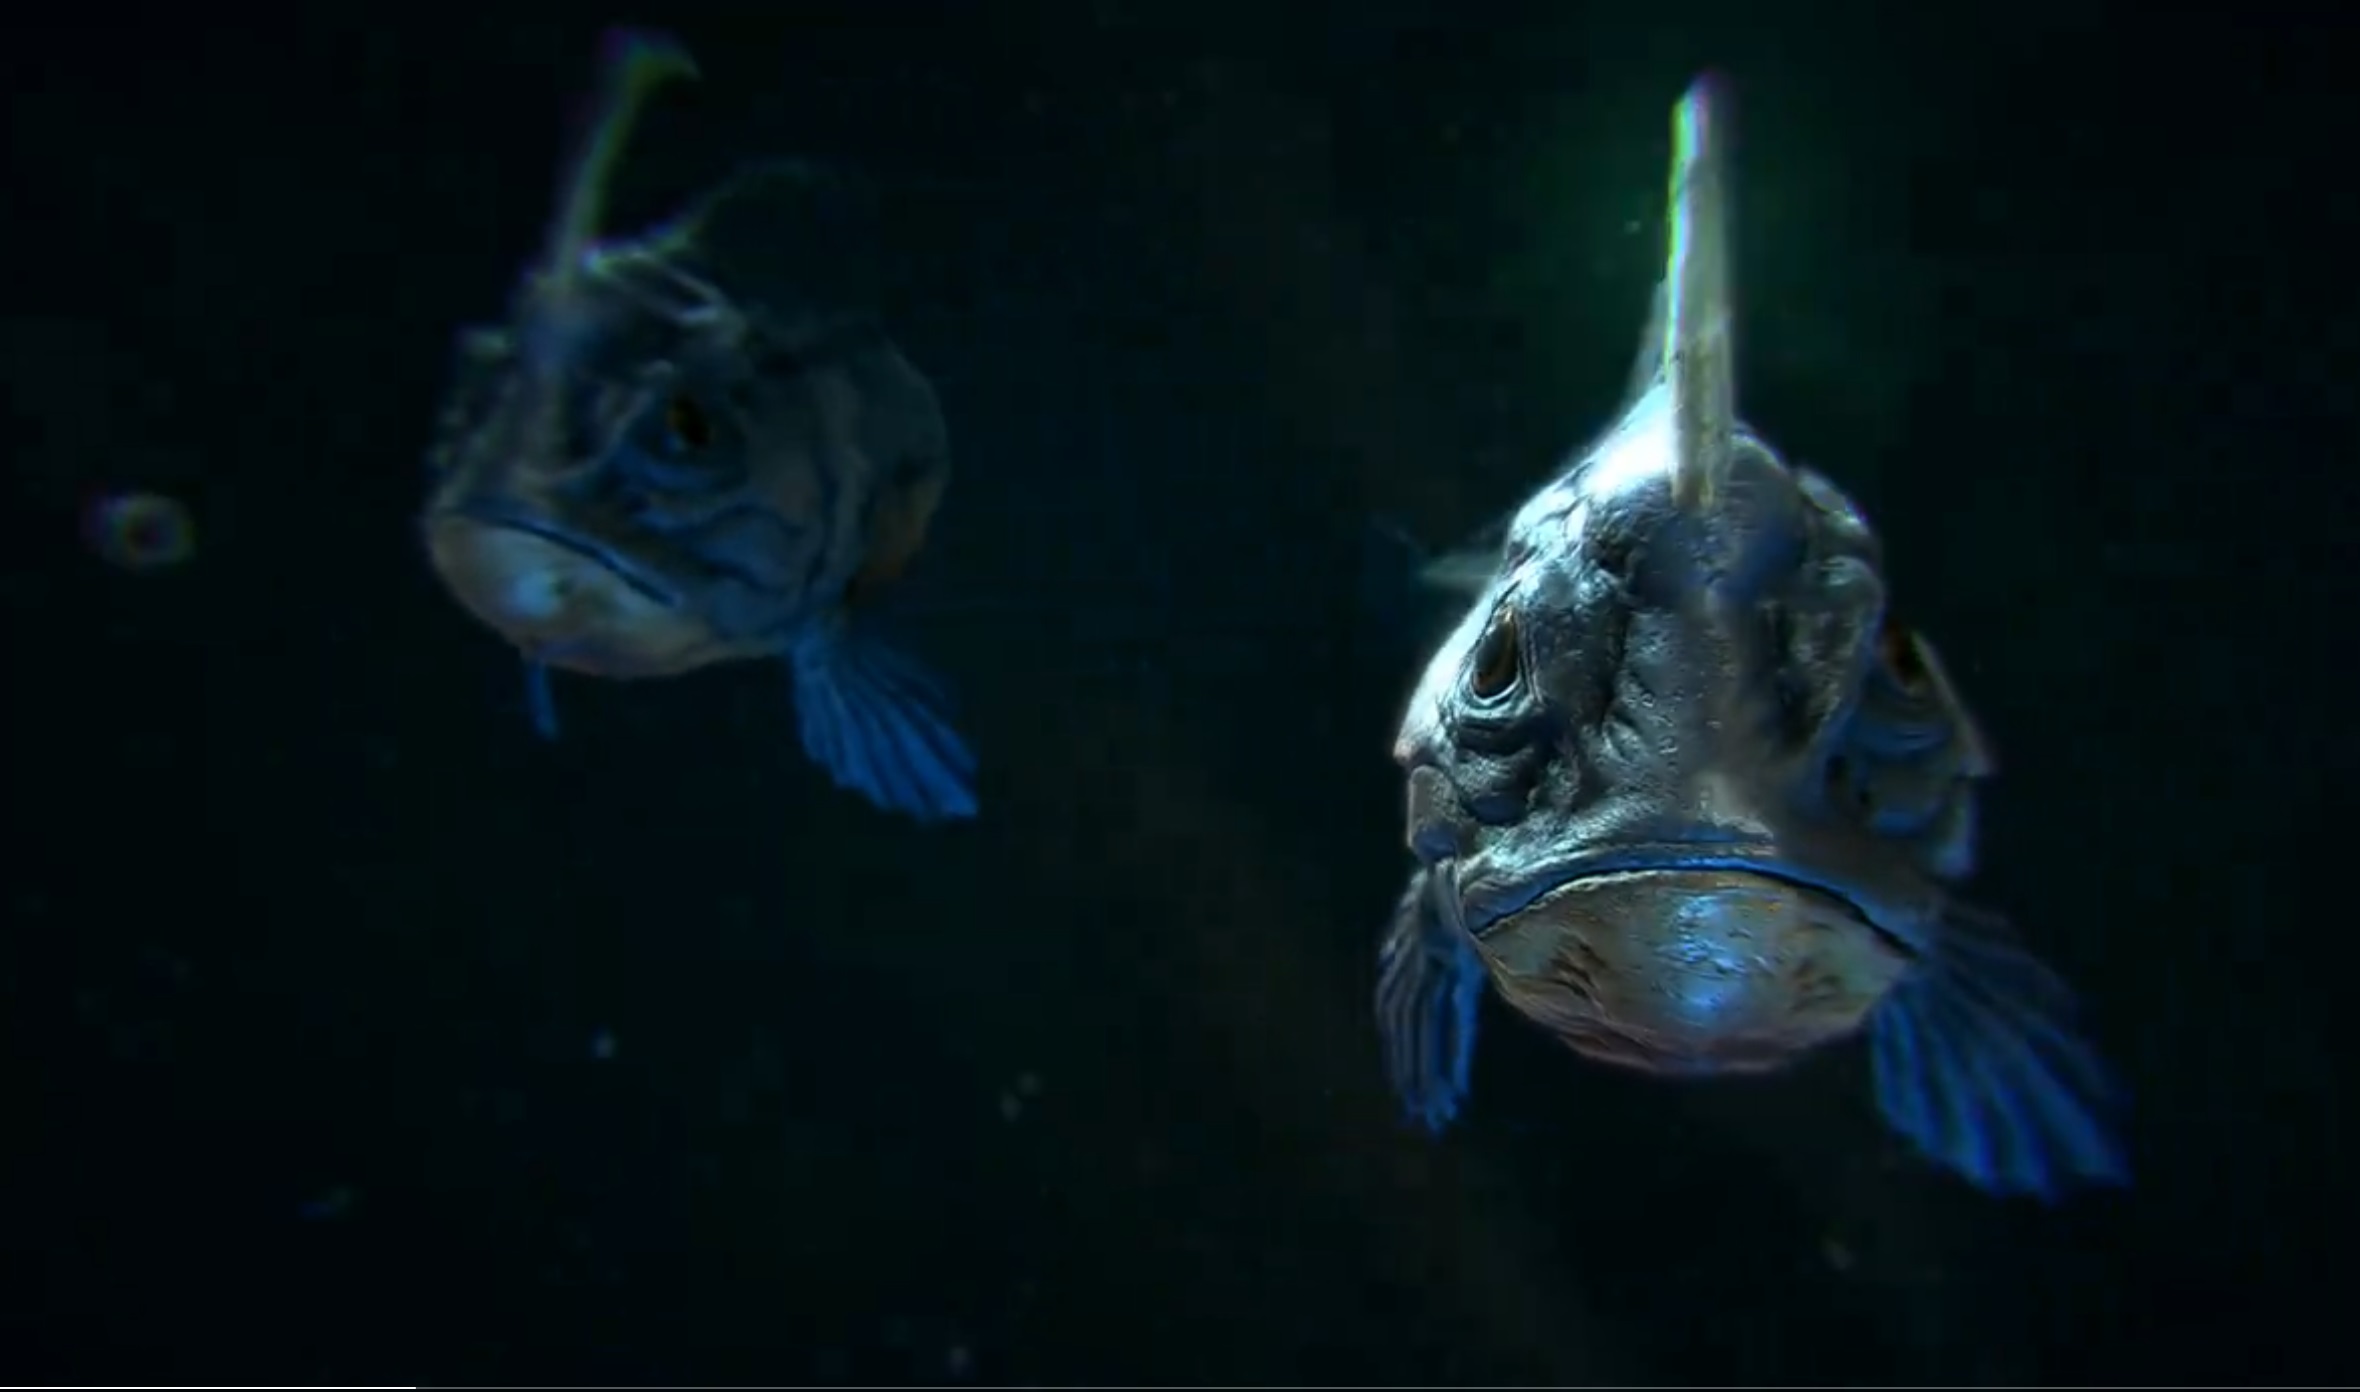 Fish staring at camera in dark water